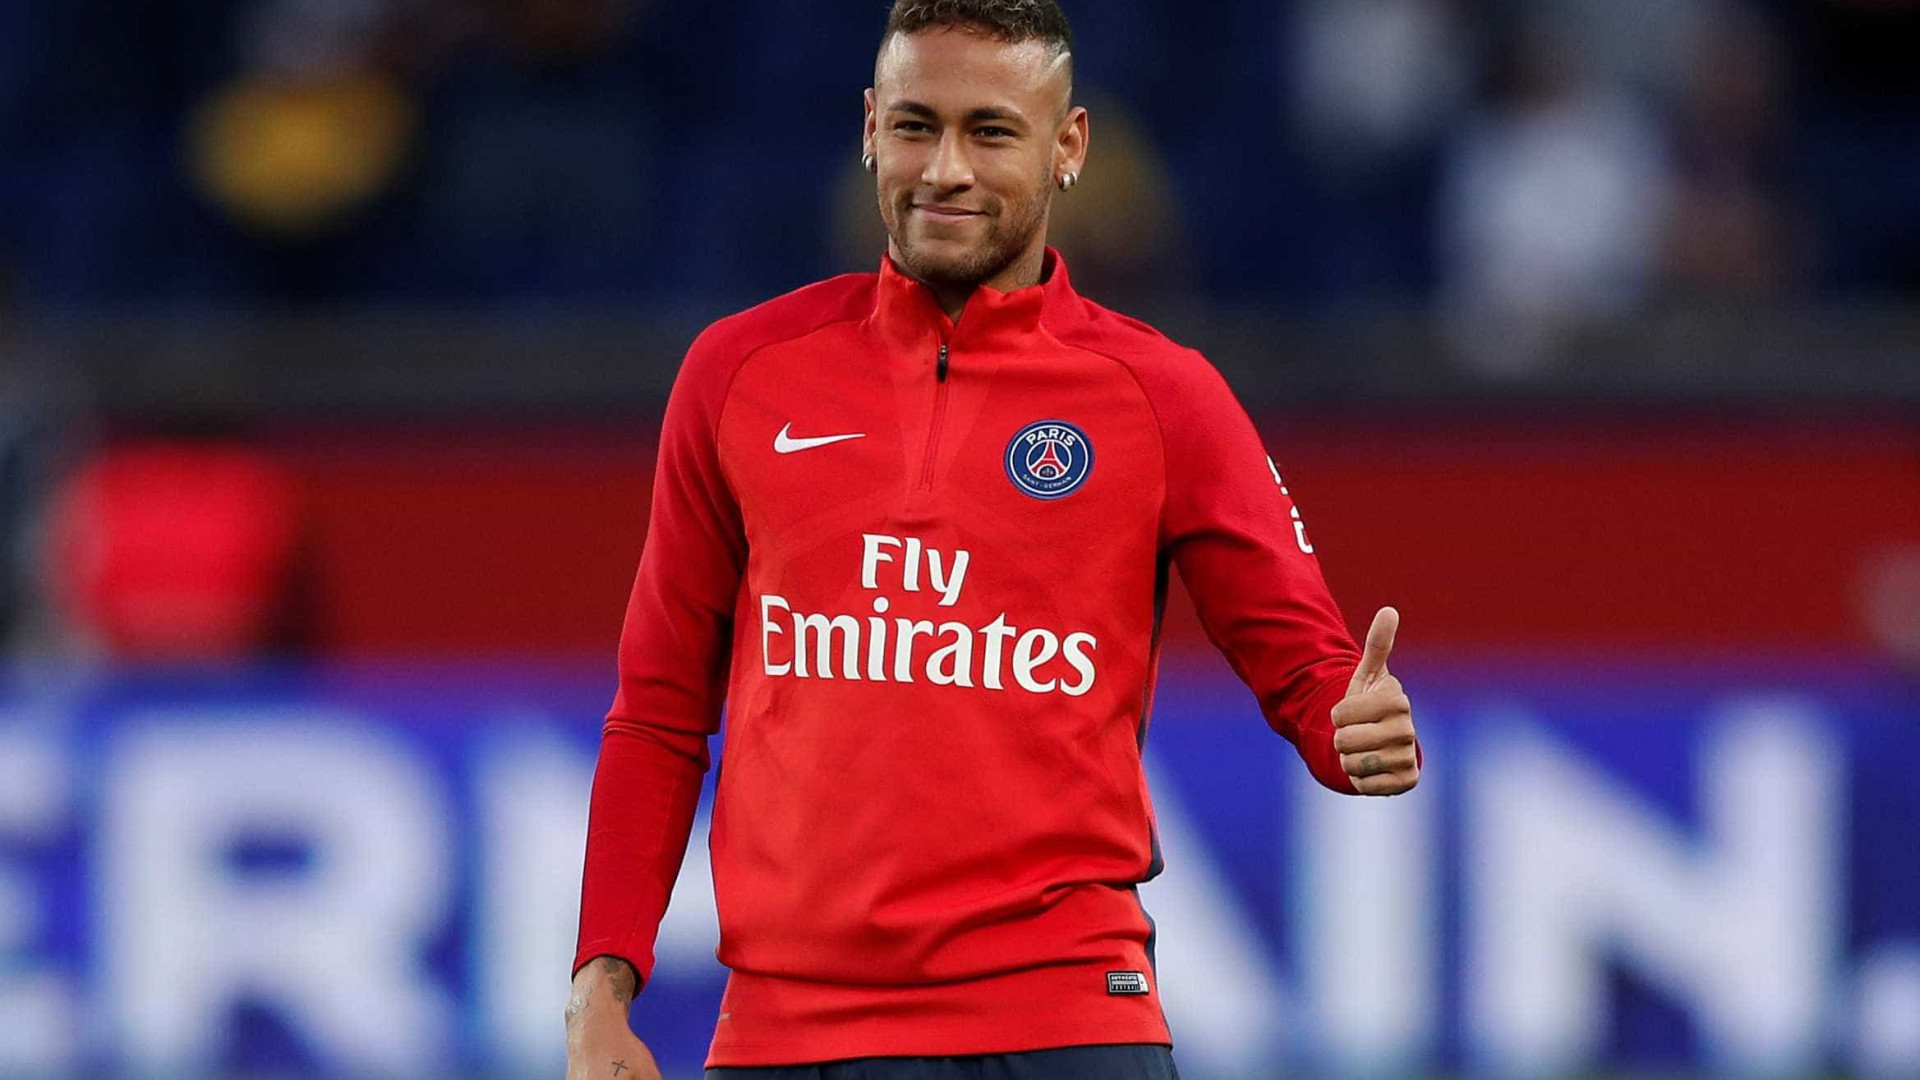 Sindicato dos Atletas da França defende Neymar em processo do Barça